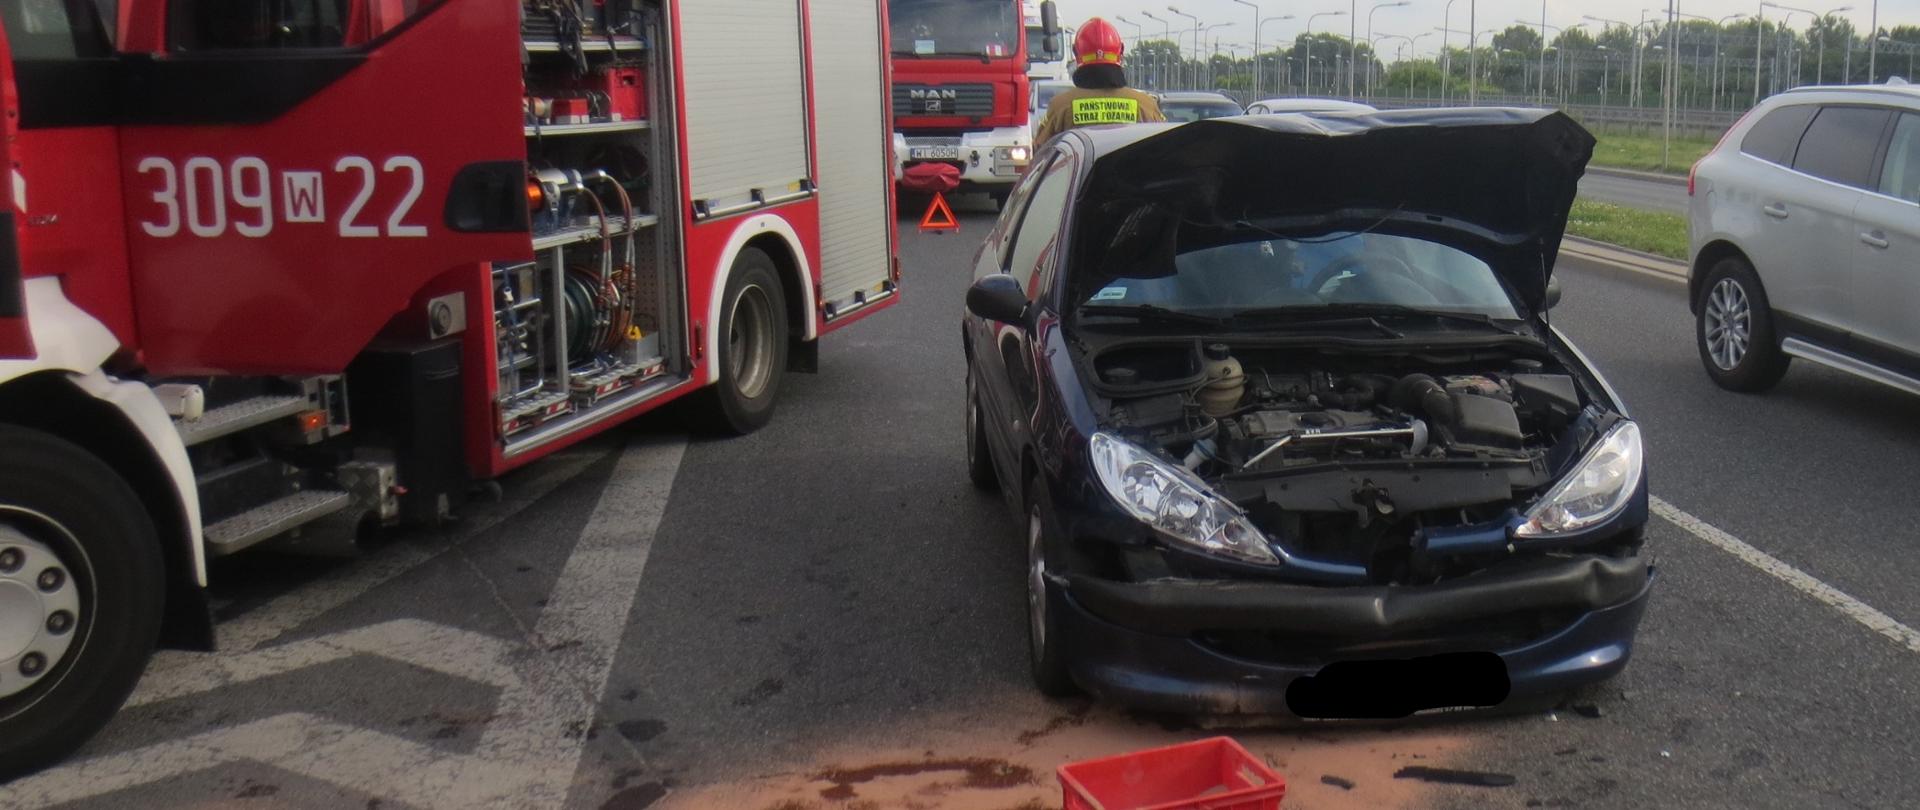 Na zdjęciu widoczny jest uszkodzony samochód osobowy, ma podniesioną maskę, obok stoii samochód straży pożarnej.